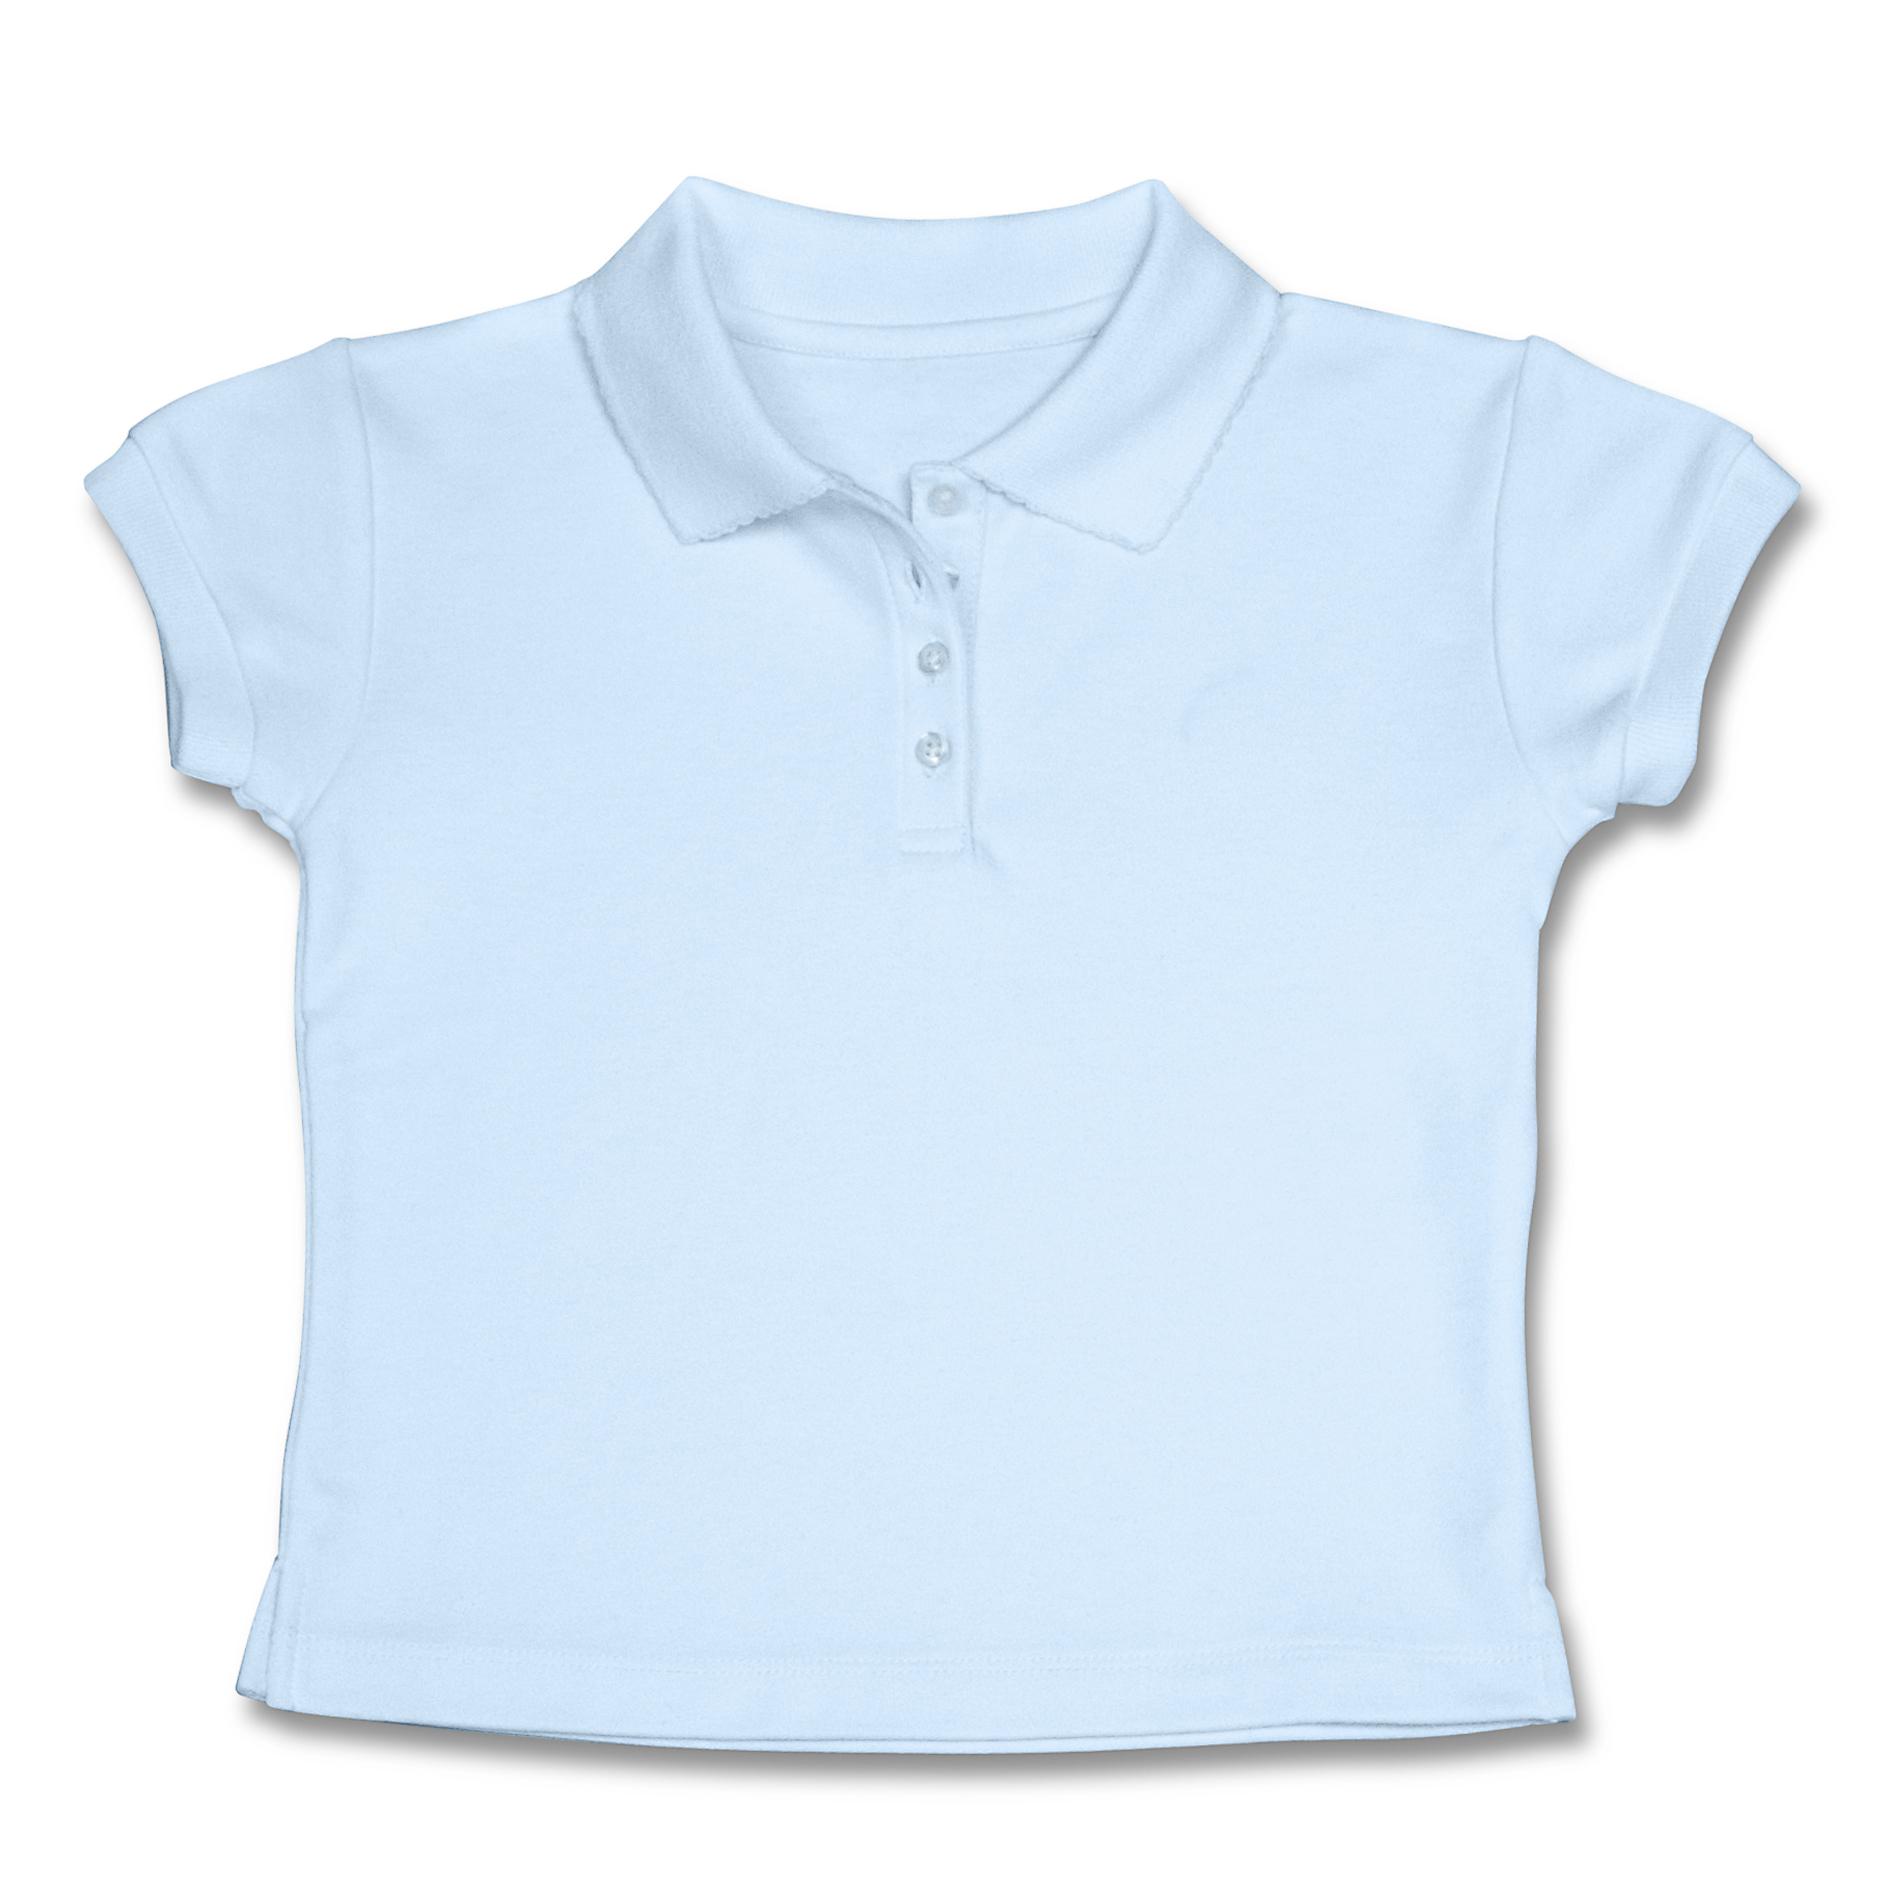 Dockers Girl's Uniform Polo Shirt - Modern Fit - Light Blue